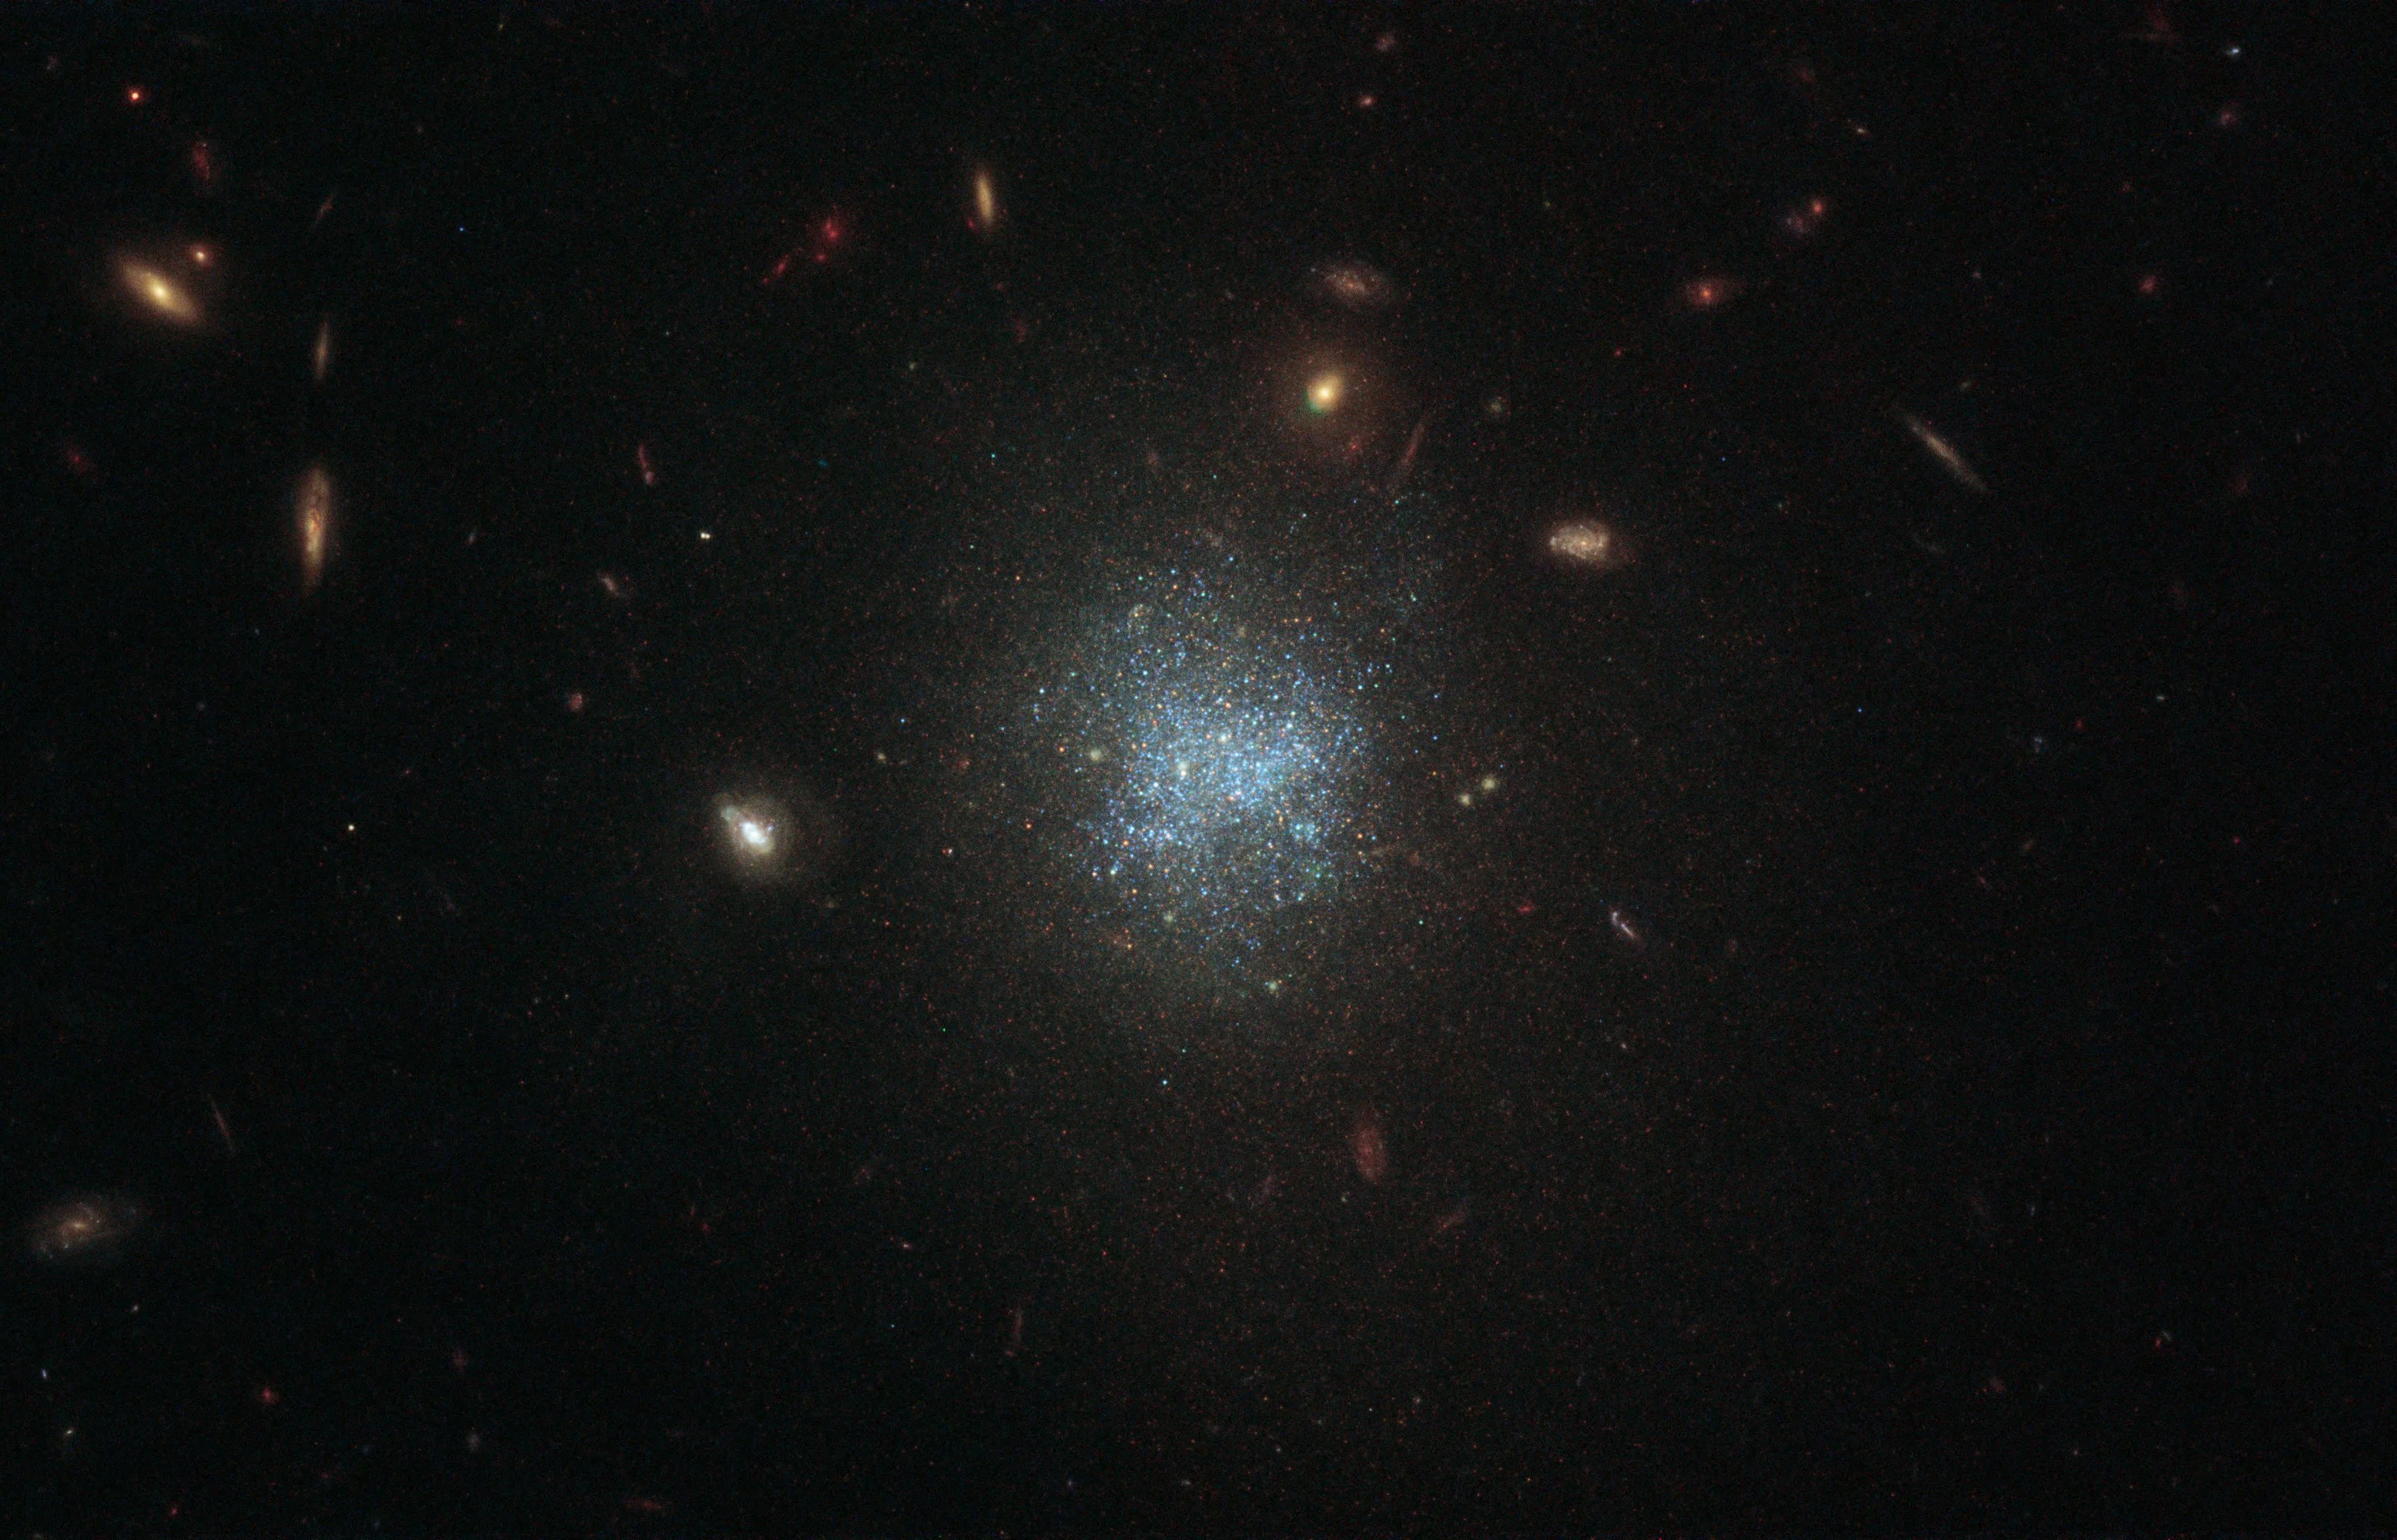 Hubble image of ugc 695